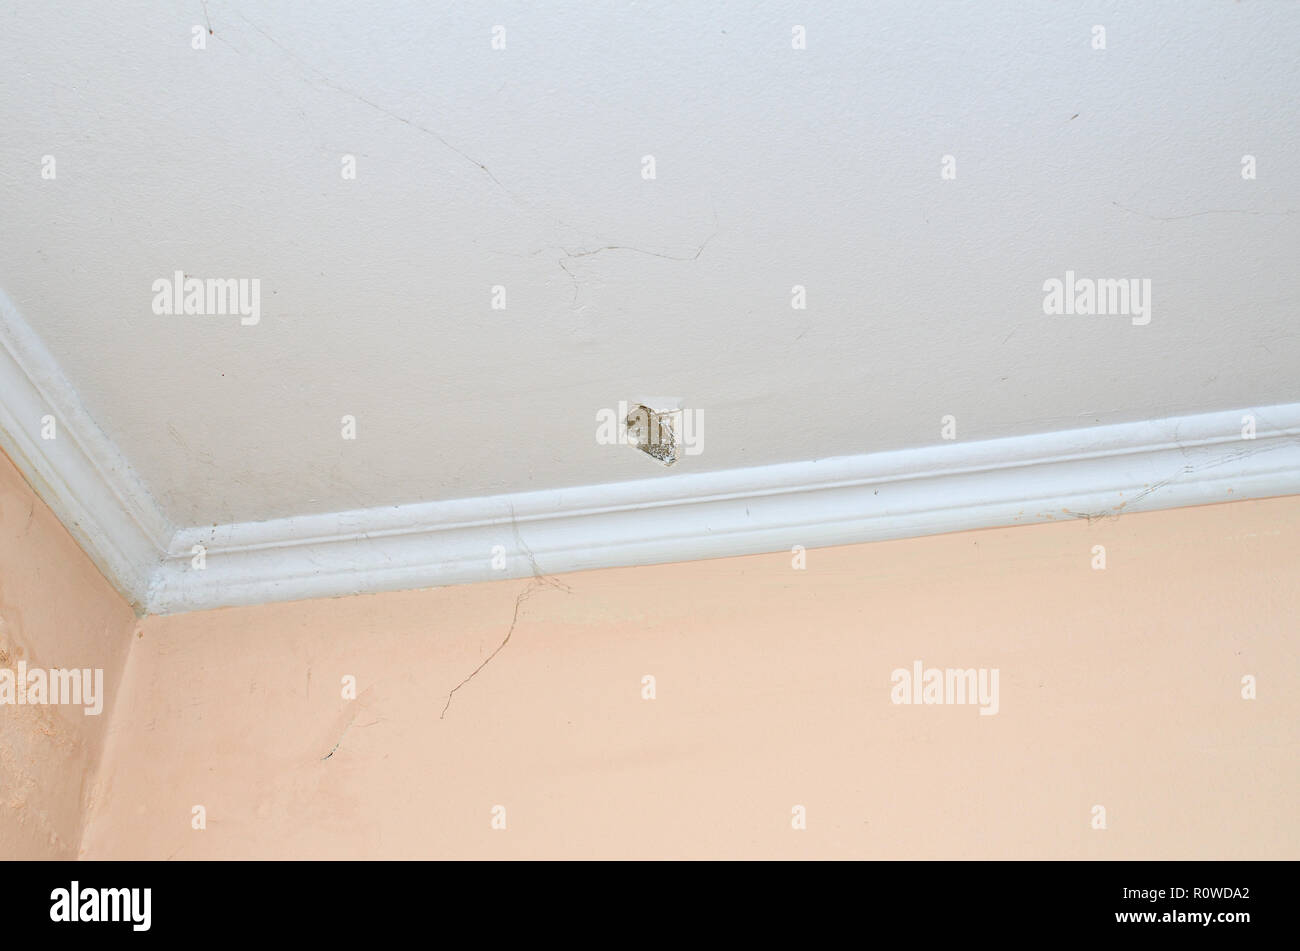 Crepa sul soffitto immagini e fotografie stock ad alta risoluzione - Alamy